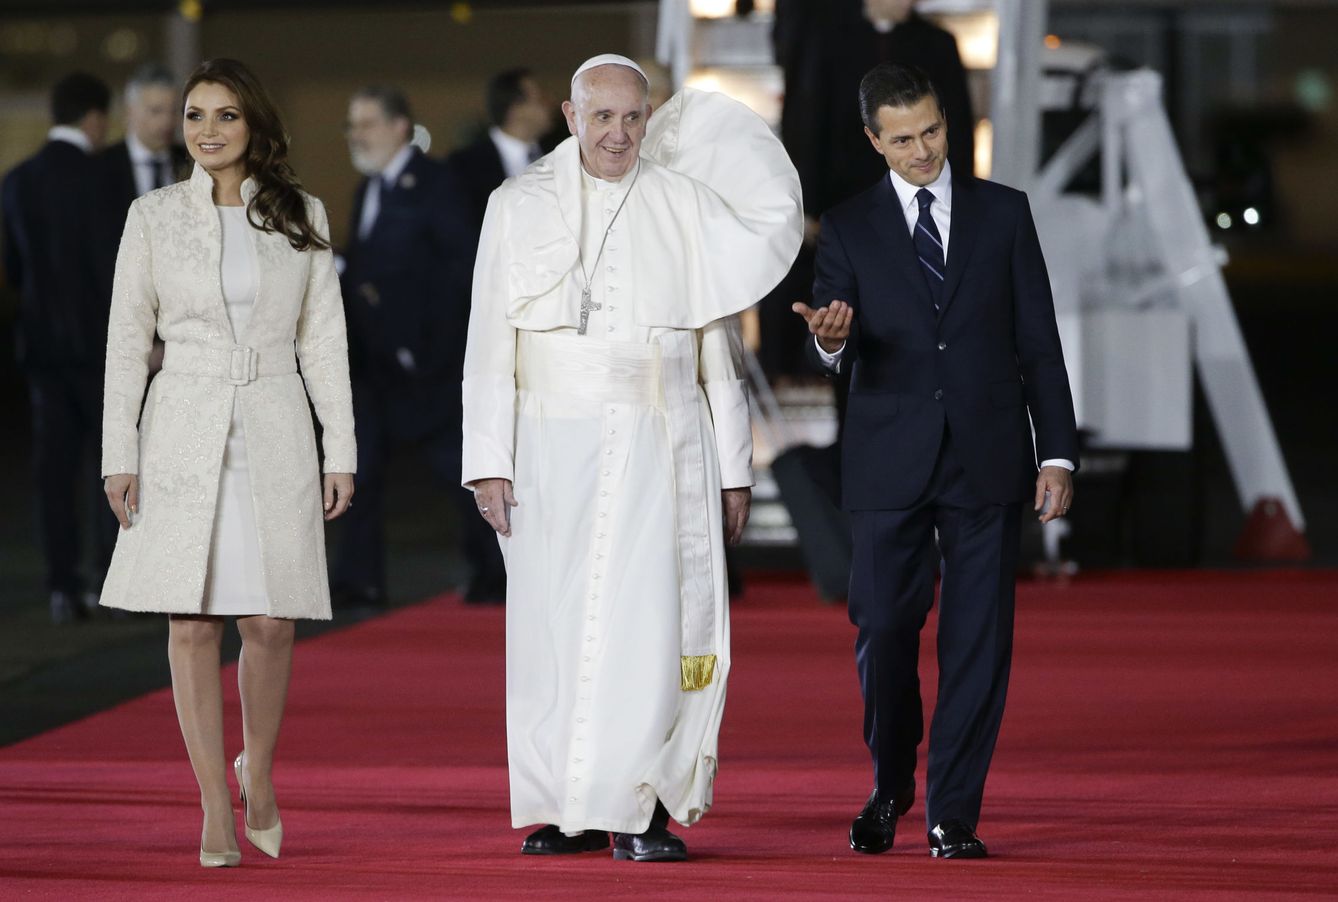 Foto: Angélica Rivera, Enrique Peña Nieto y el Papa (Gtres)